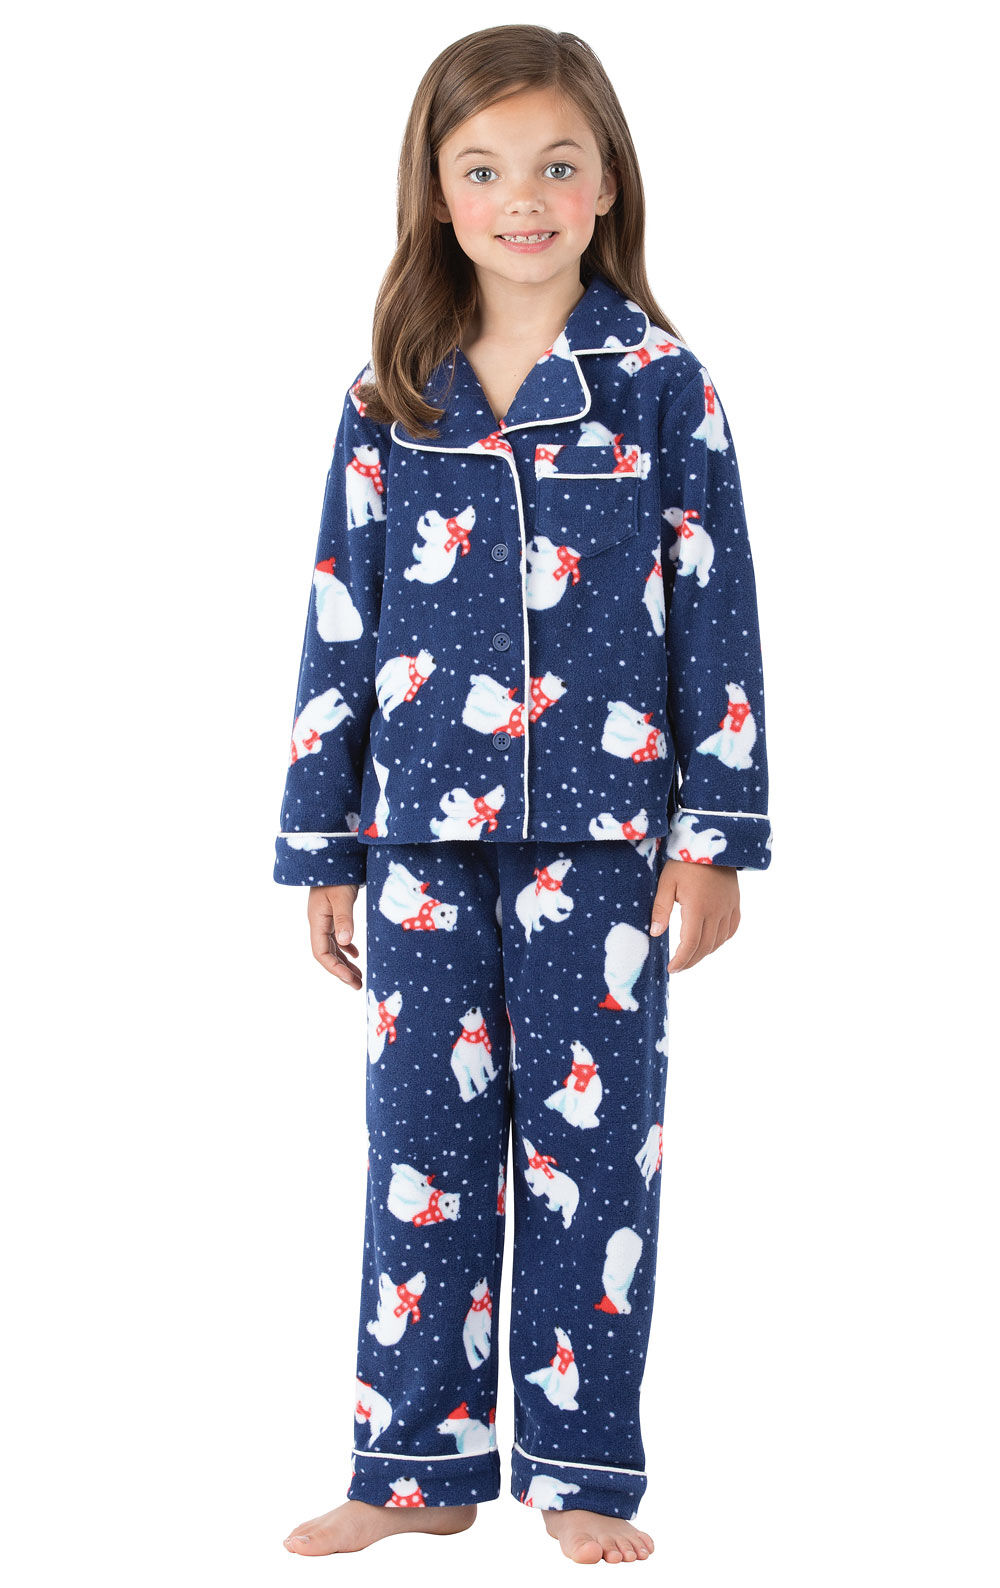 Kids Button Down Pajamas PajamaGram Pajamas for Kids 